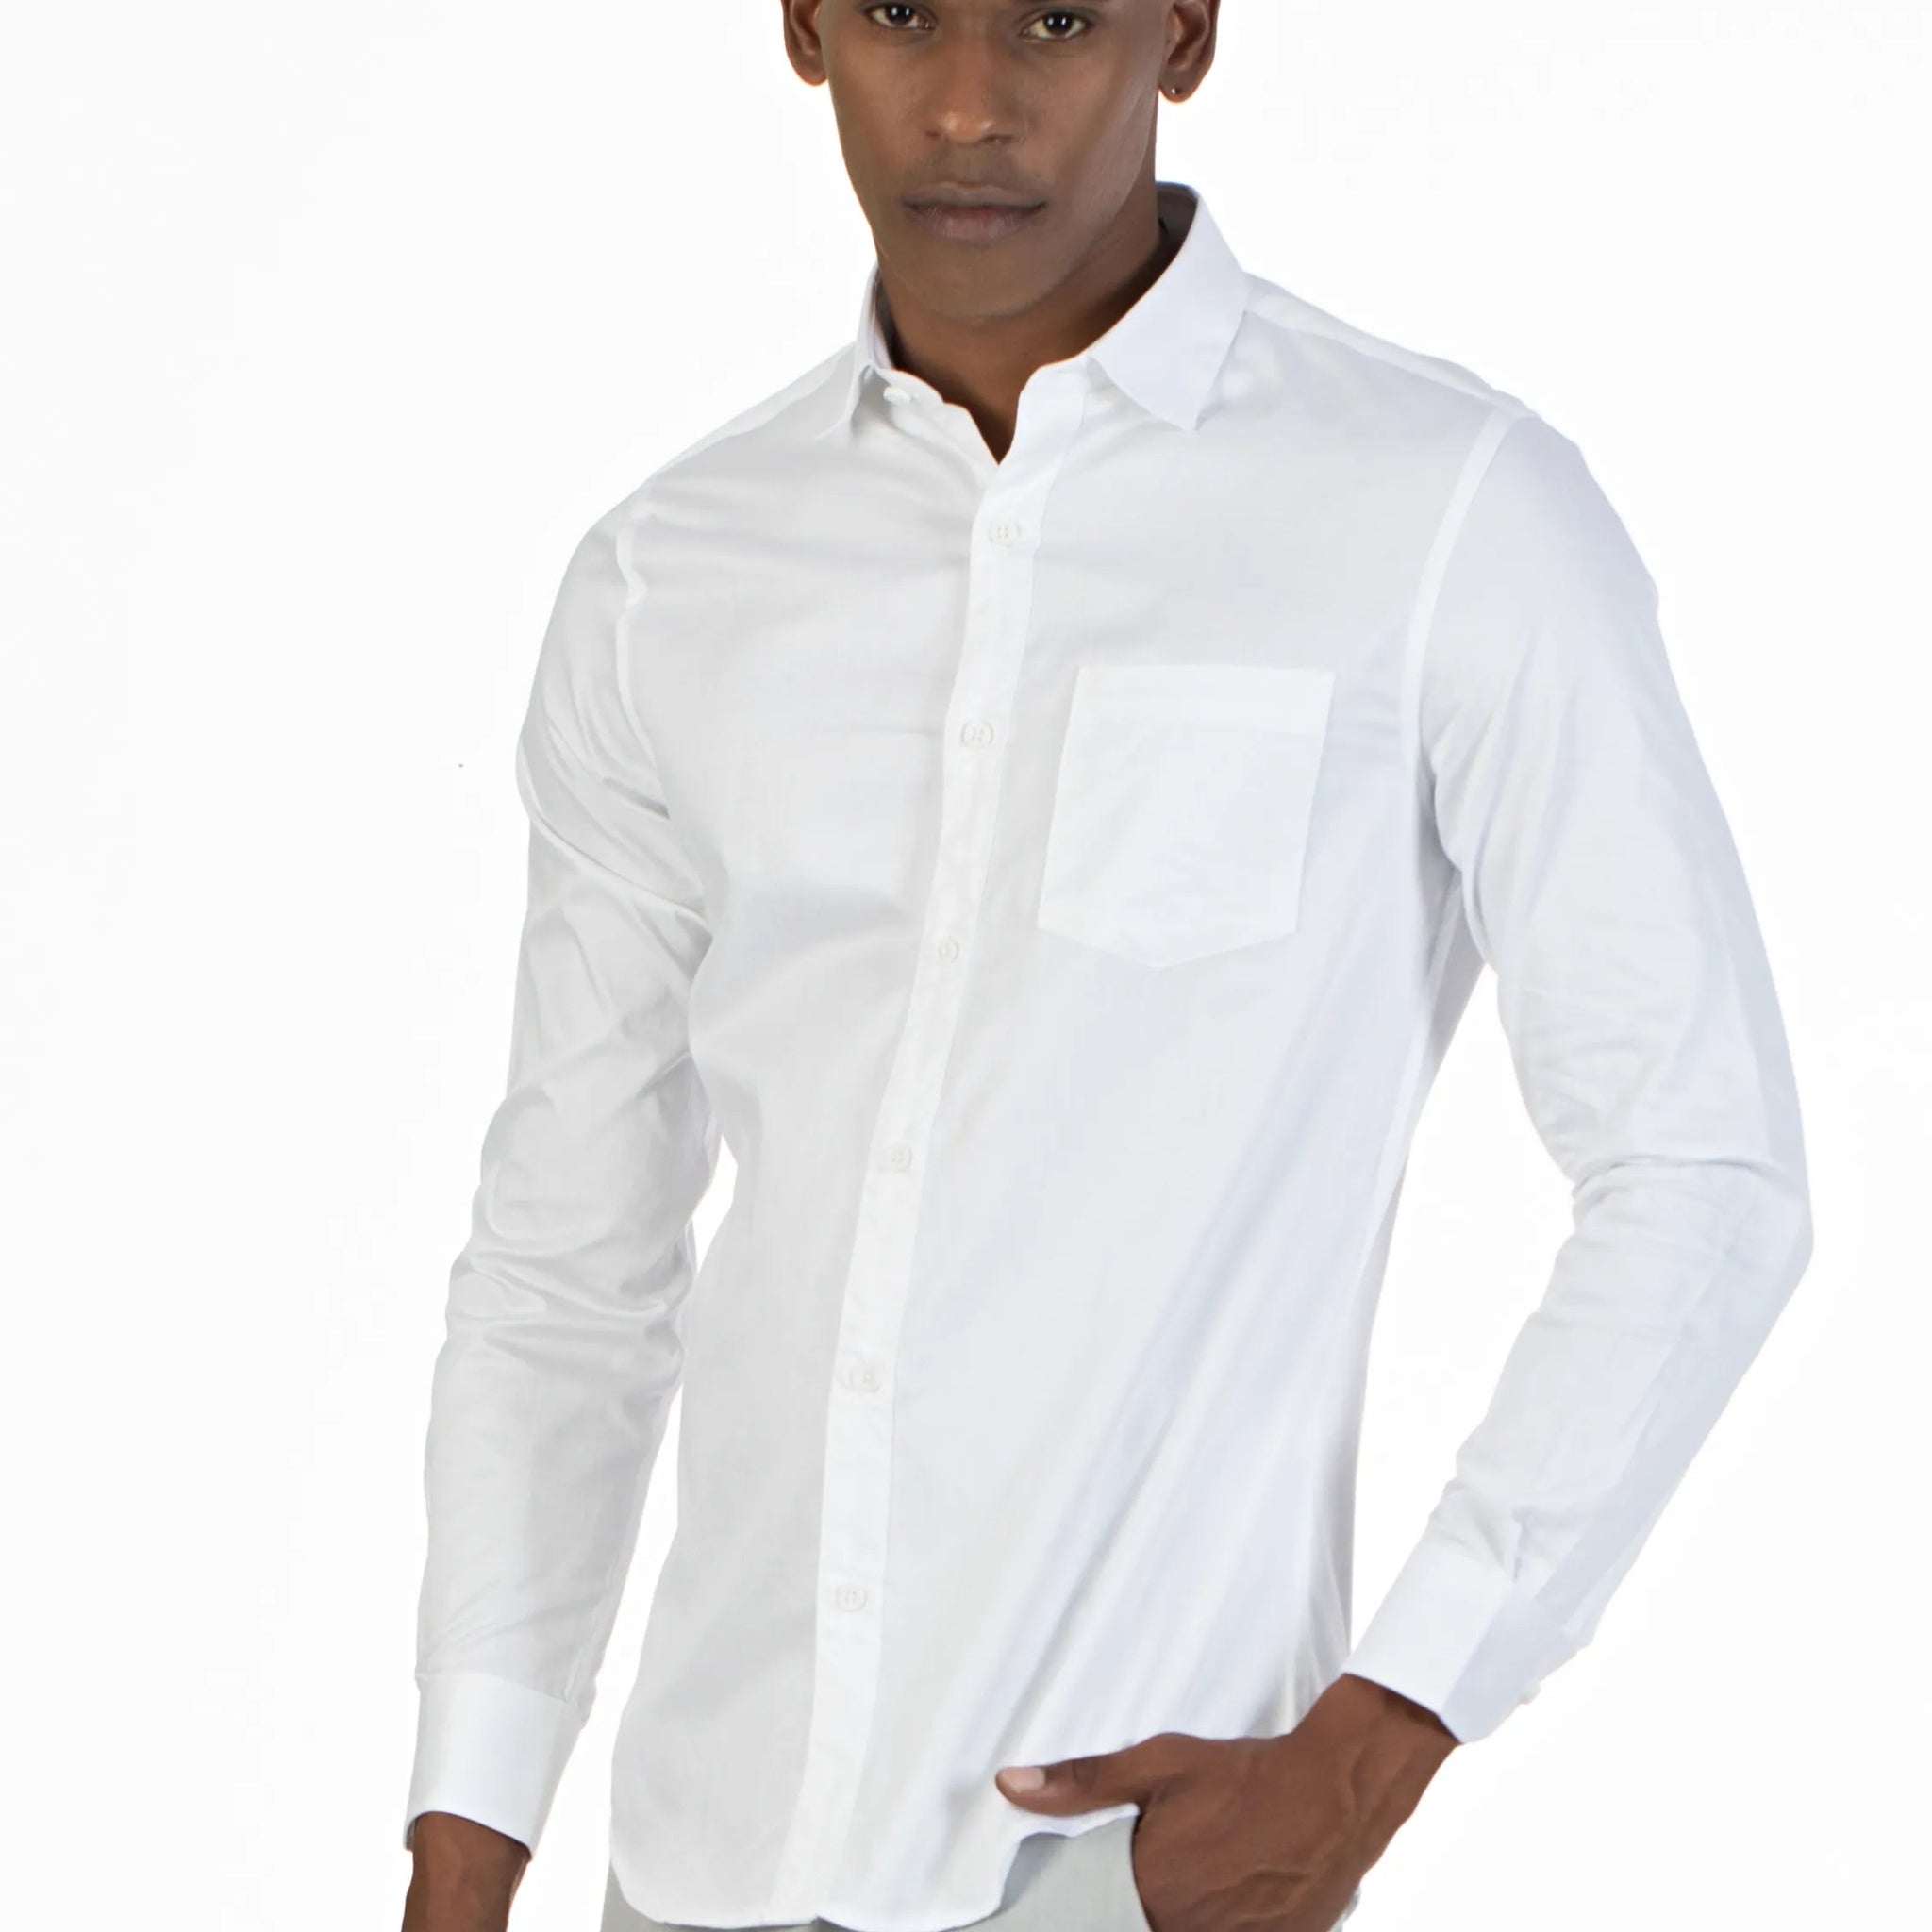 White Men's Premium Stretch Satin Plain Shirt